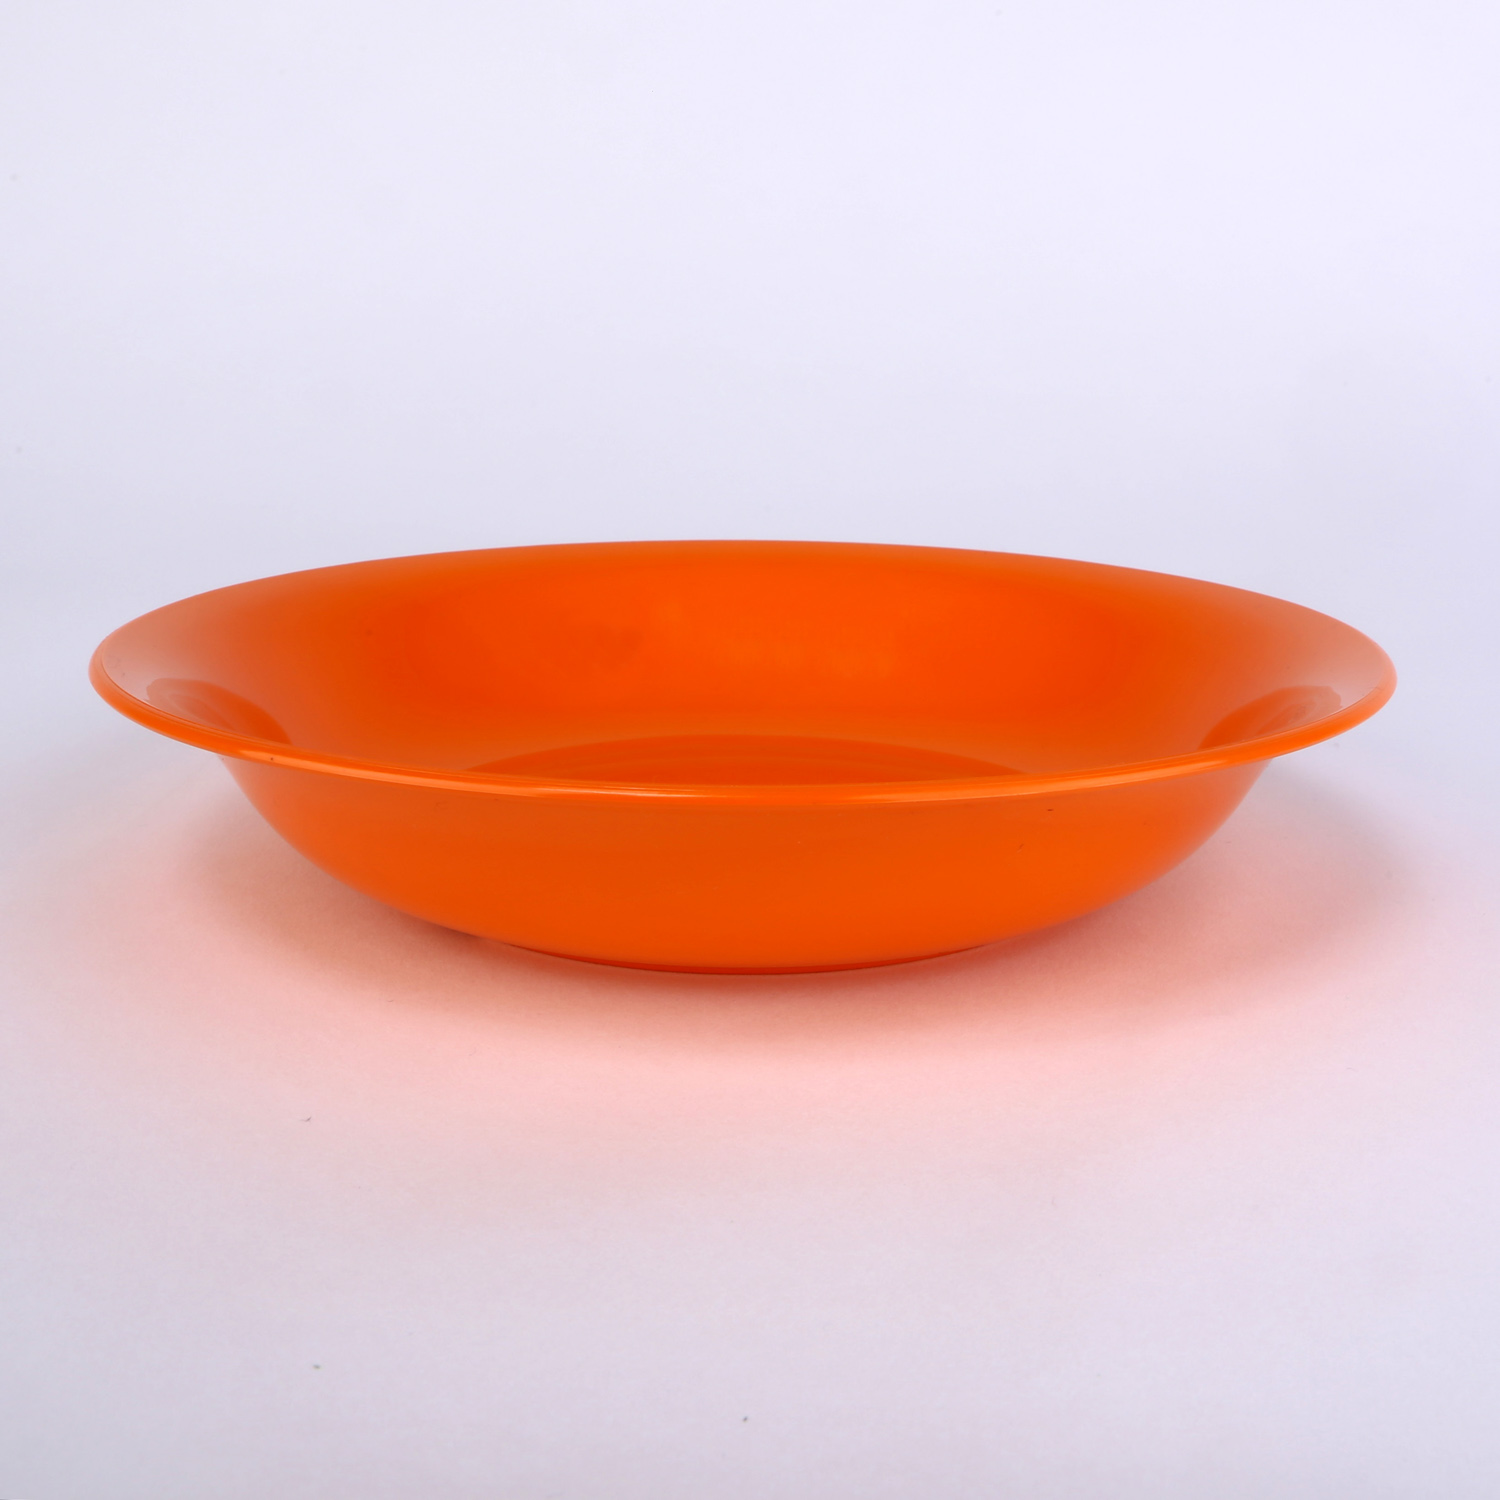 vaLon Zephyr Suppenteller 20,5 cm aus schadstofffreiem Kunststoff in der Farbe orange.